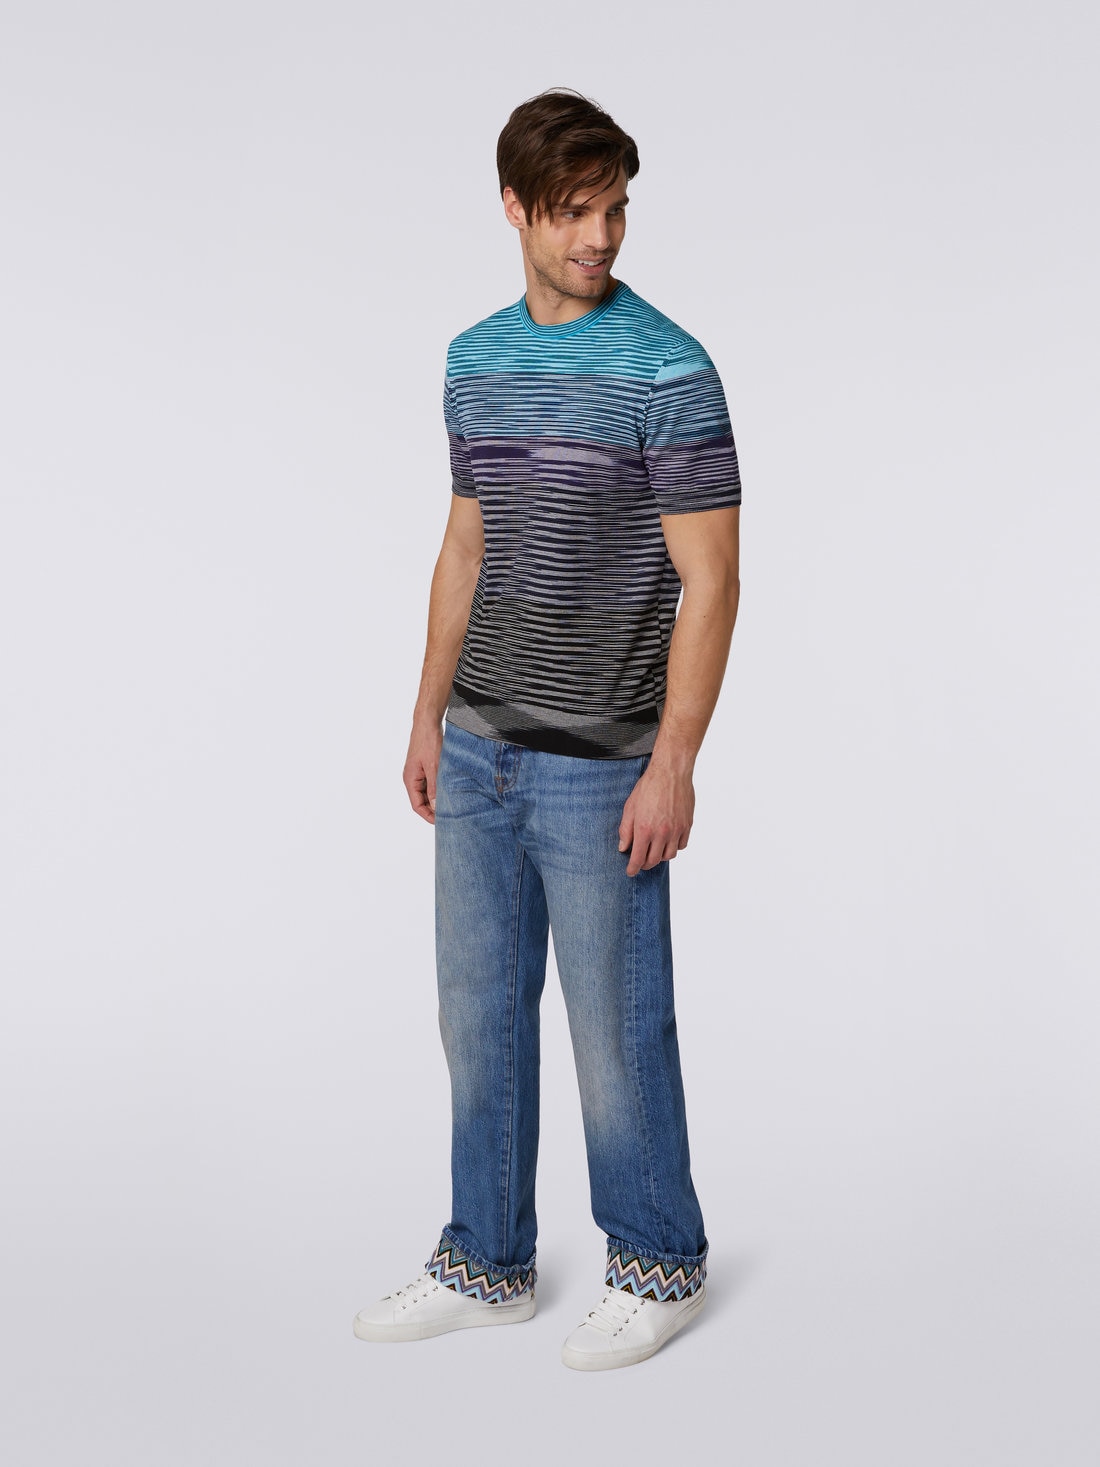 Short-sleeved crew-neck T-shirt in cotton knit with dégradé stripes, Blue, Purple & Black - US23SL1CBK012QS91DS - 2